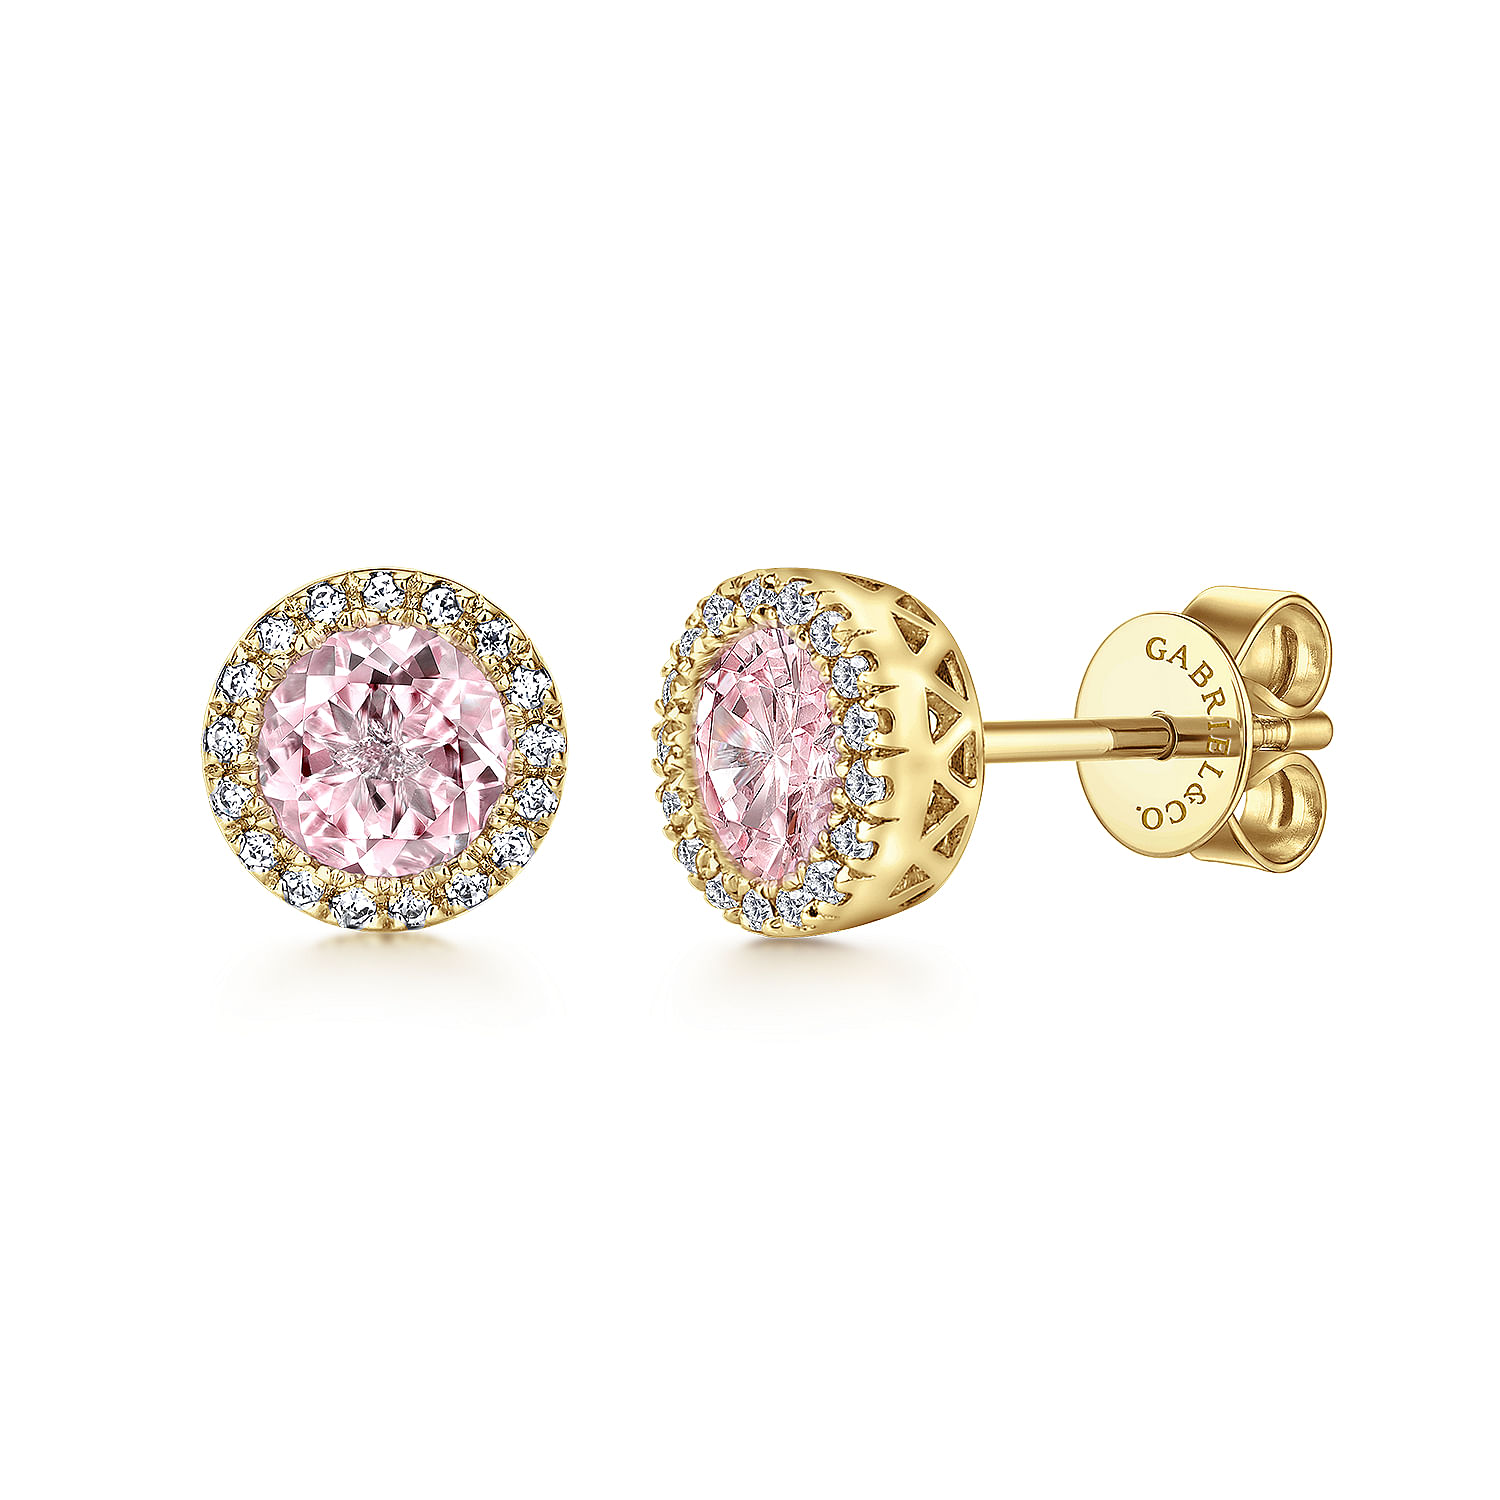 14K Yellow Gold Diamond and Pink Created Zircon Halo Stud Earrings